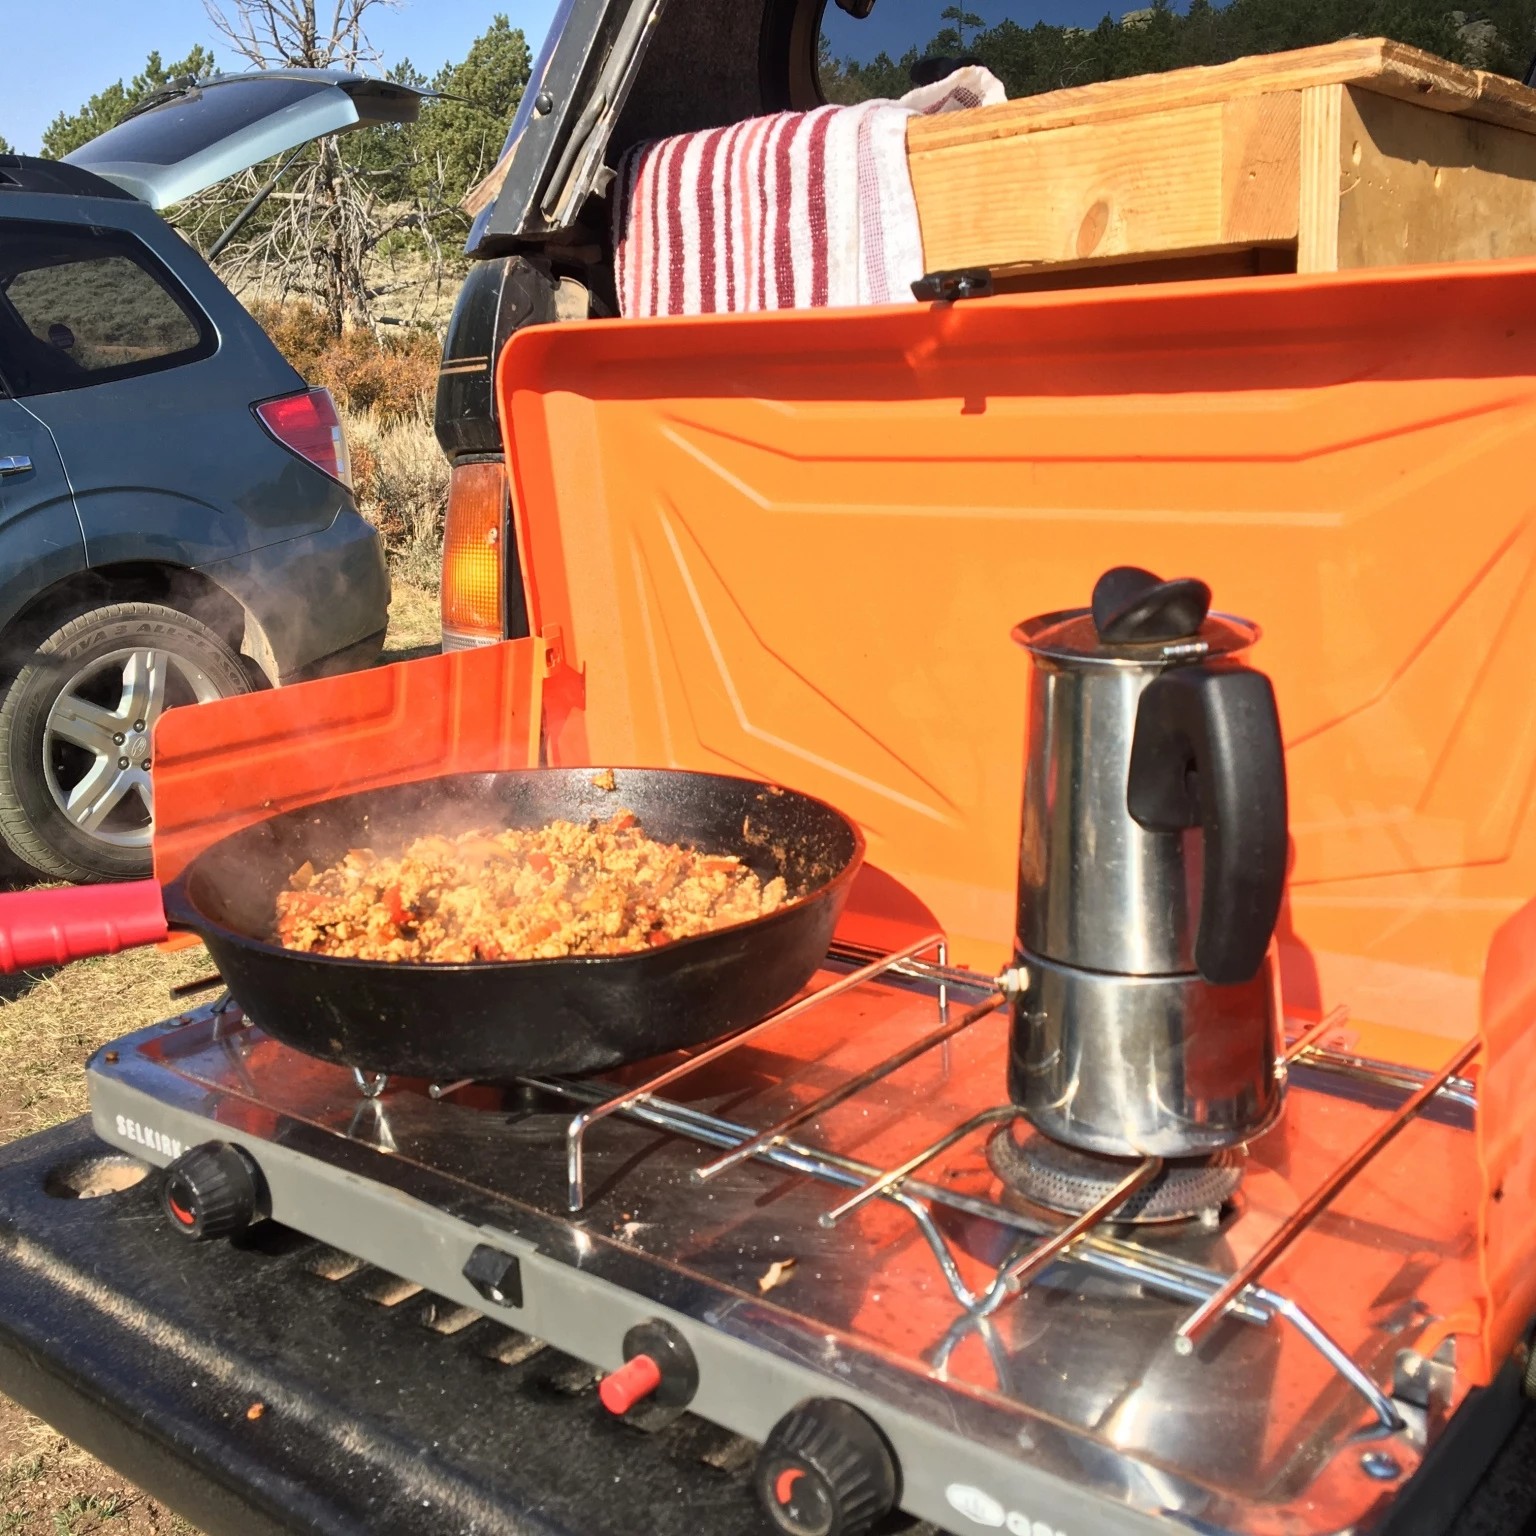 GSI Outdoors Selkirk 540i Dual Burner Camping Stove